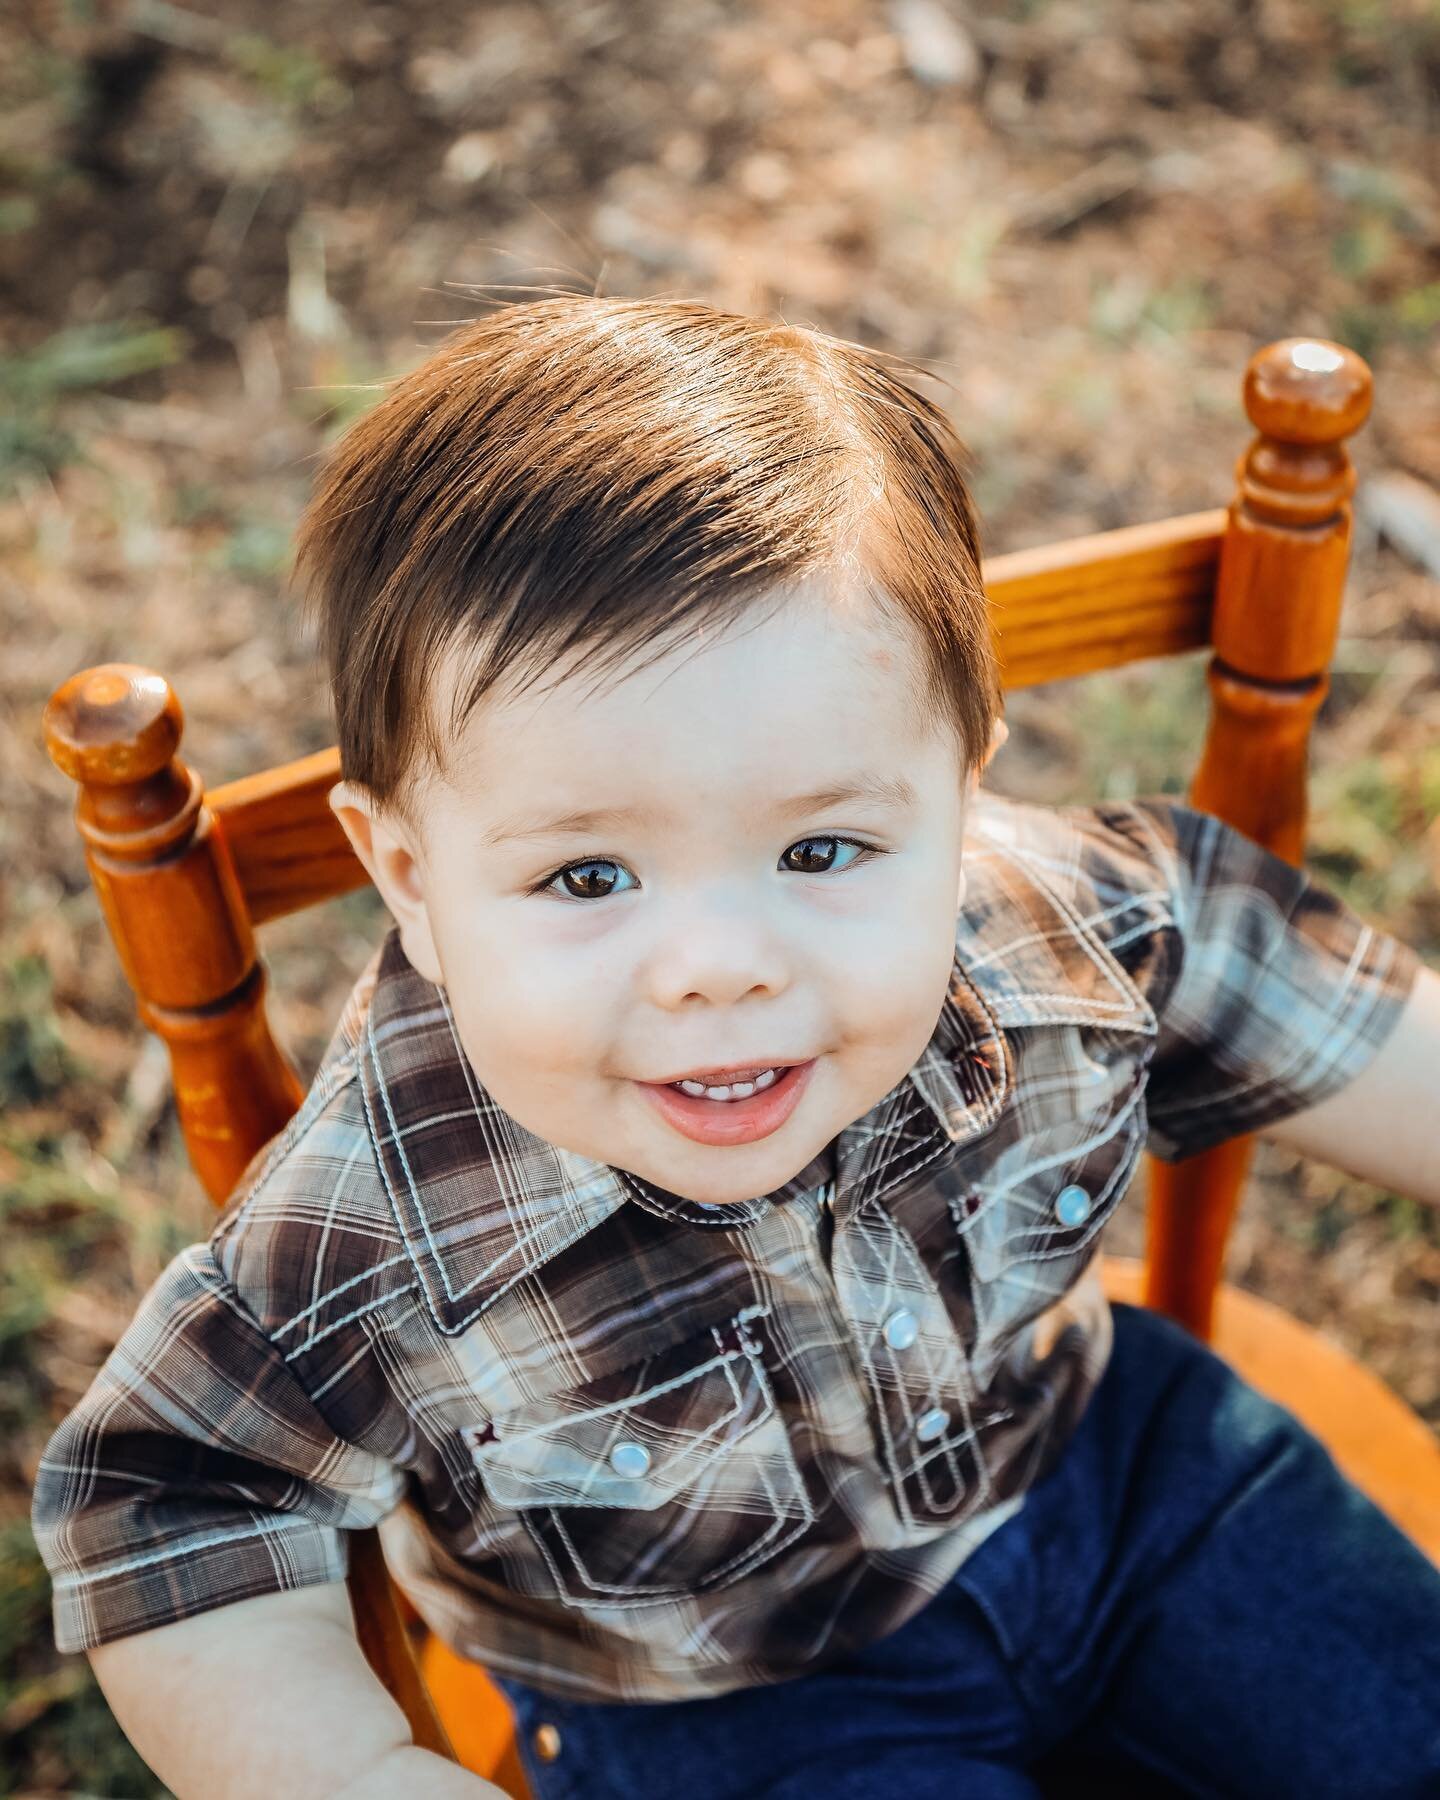 This sweet boy is just precious!
.
.
.
#oneyearold #oneyearphotoshoot #handsomeguy #babyphotography #familyphotographer